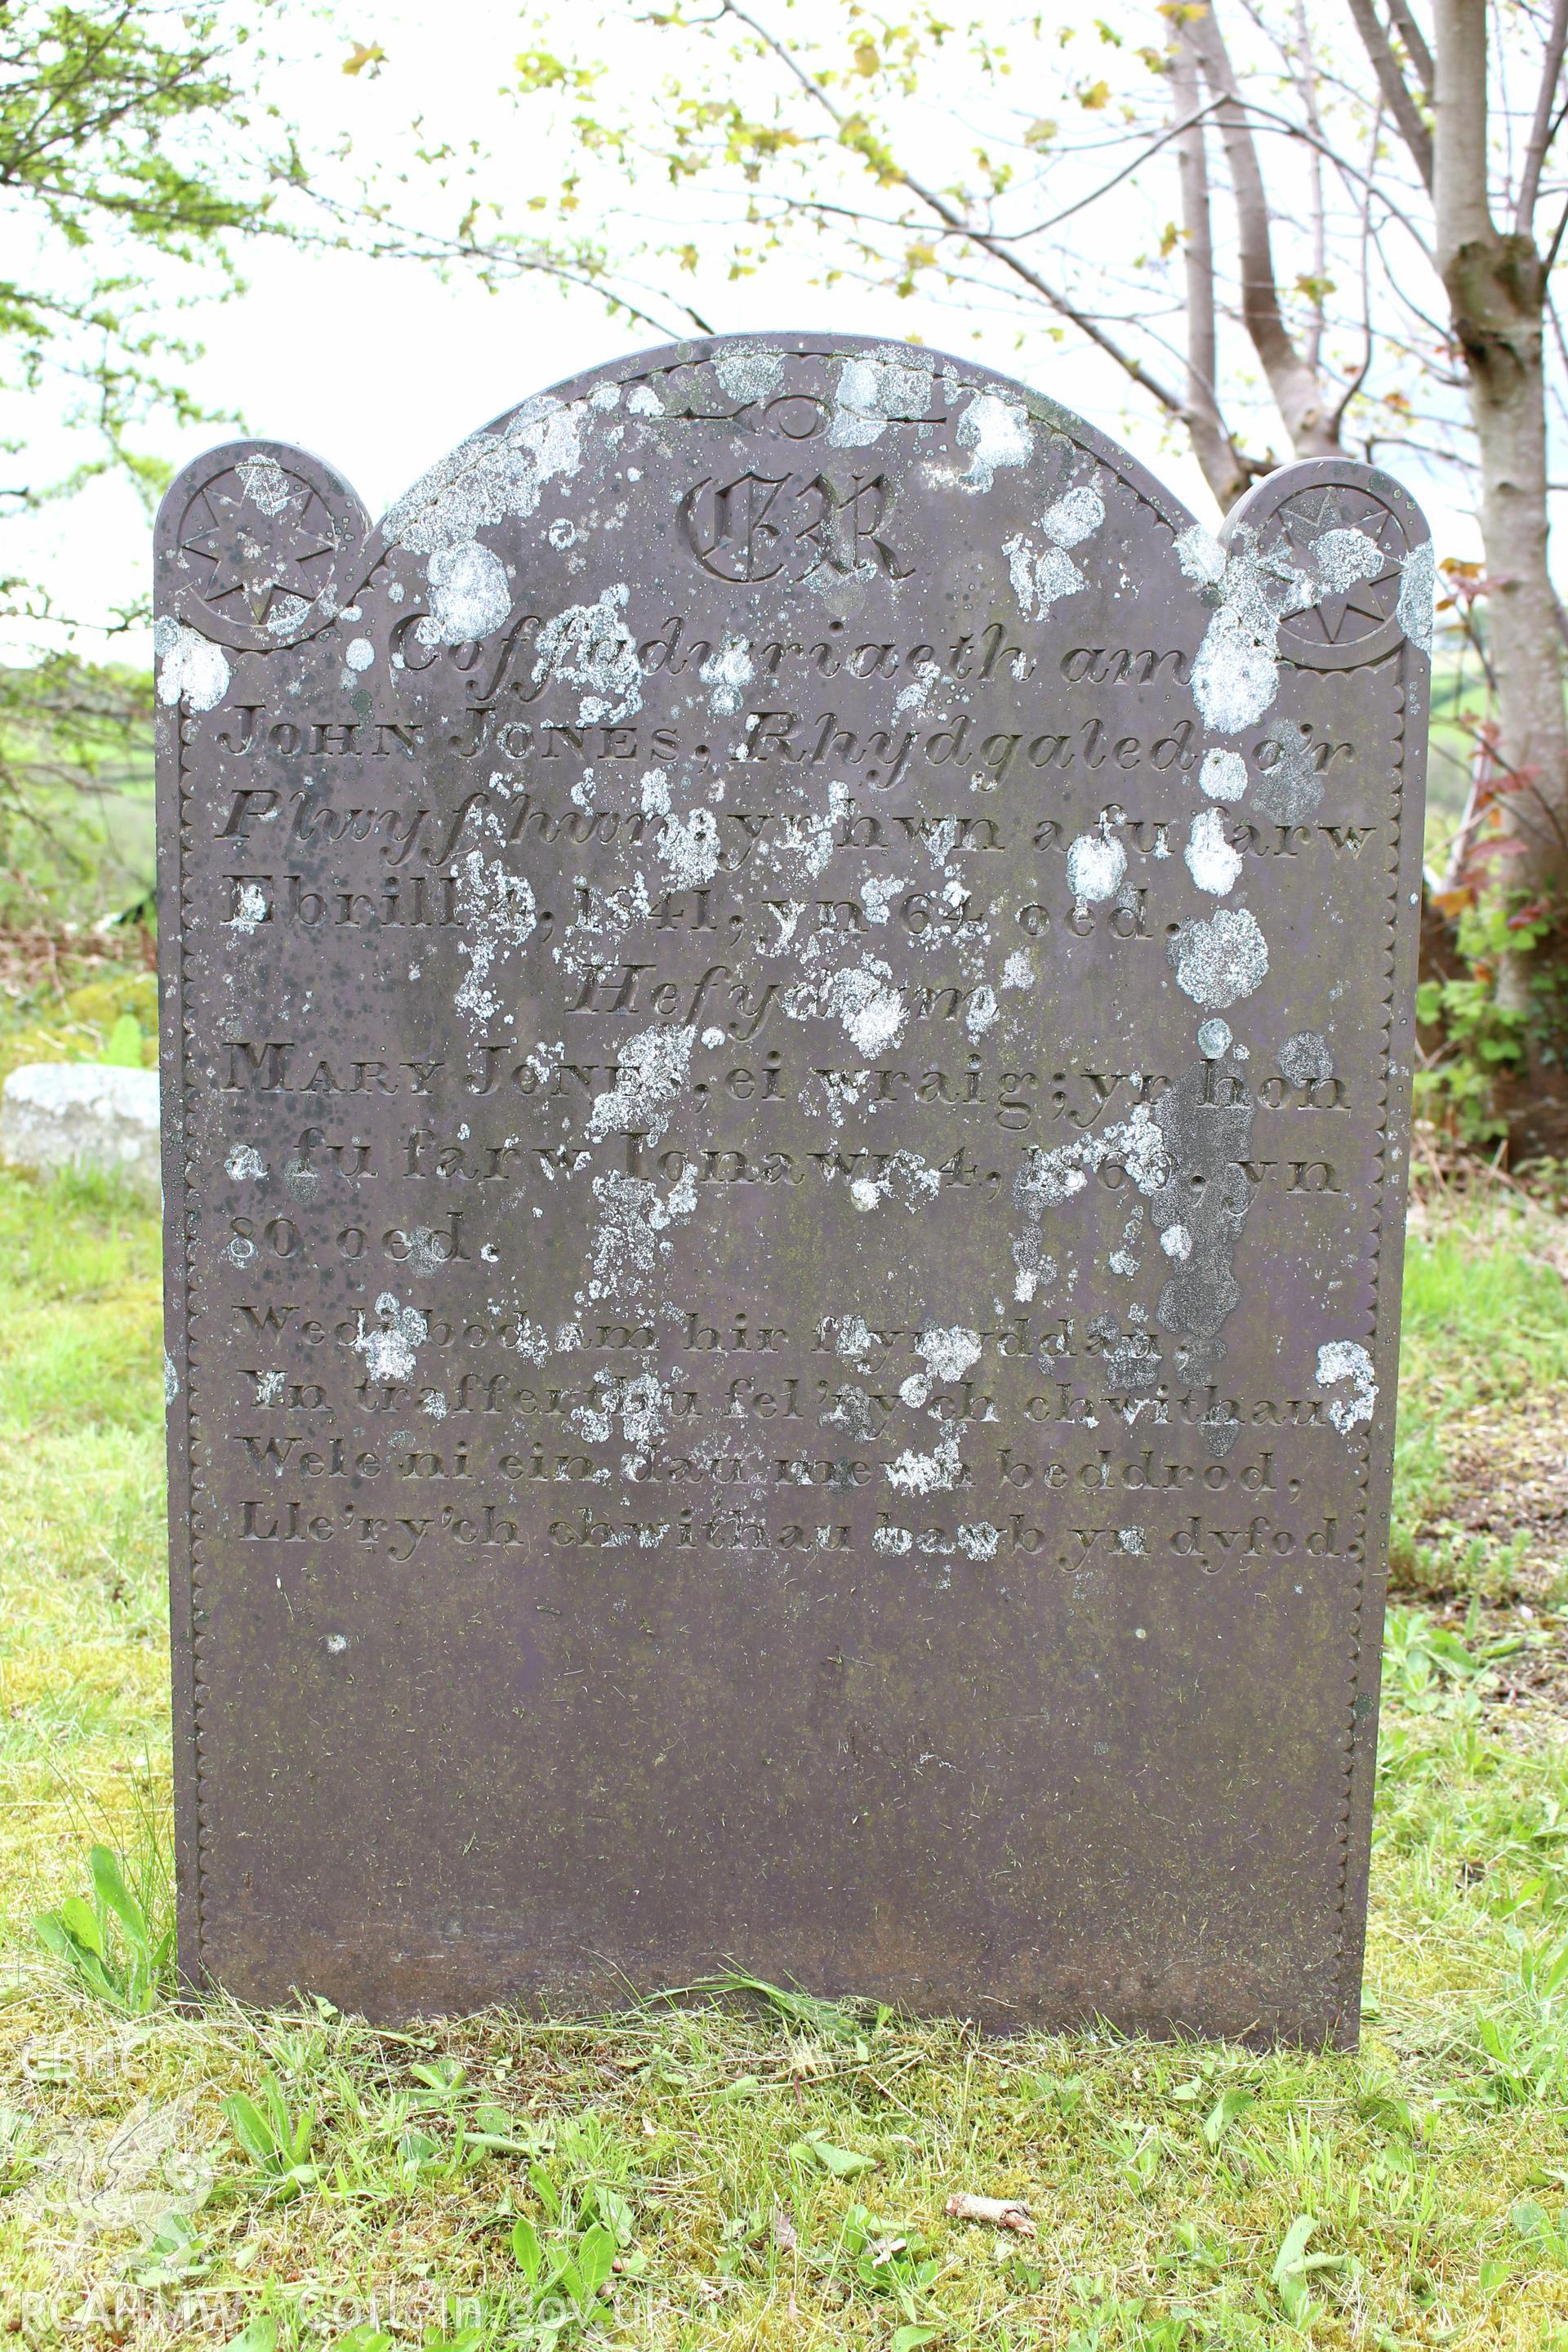 Gravestone of John & Mary Jones